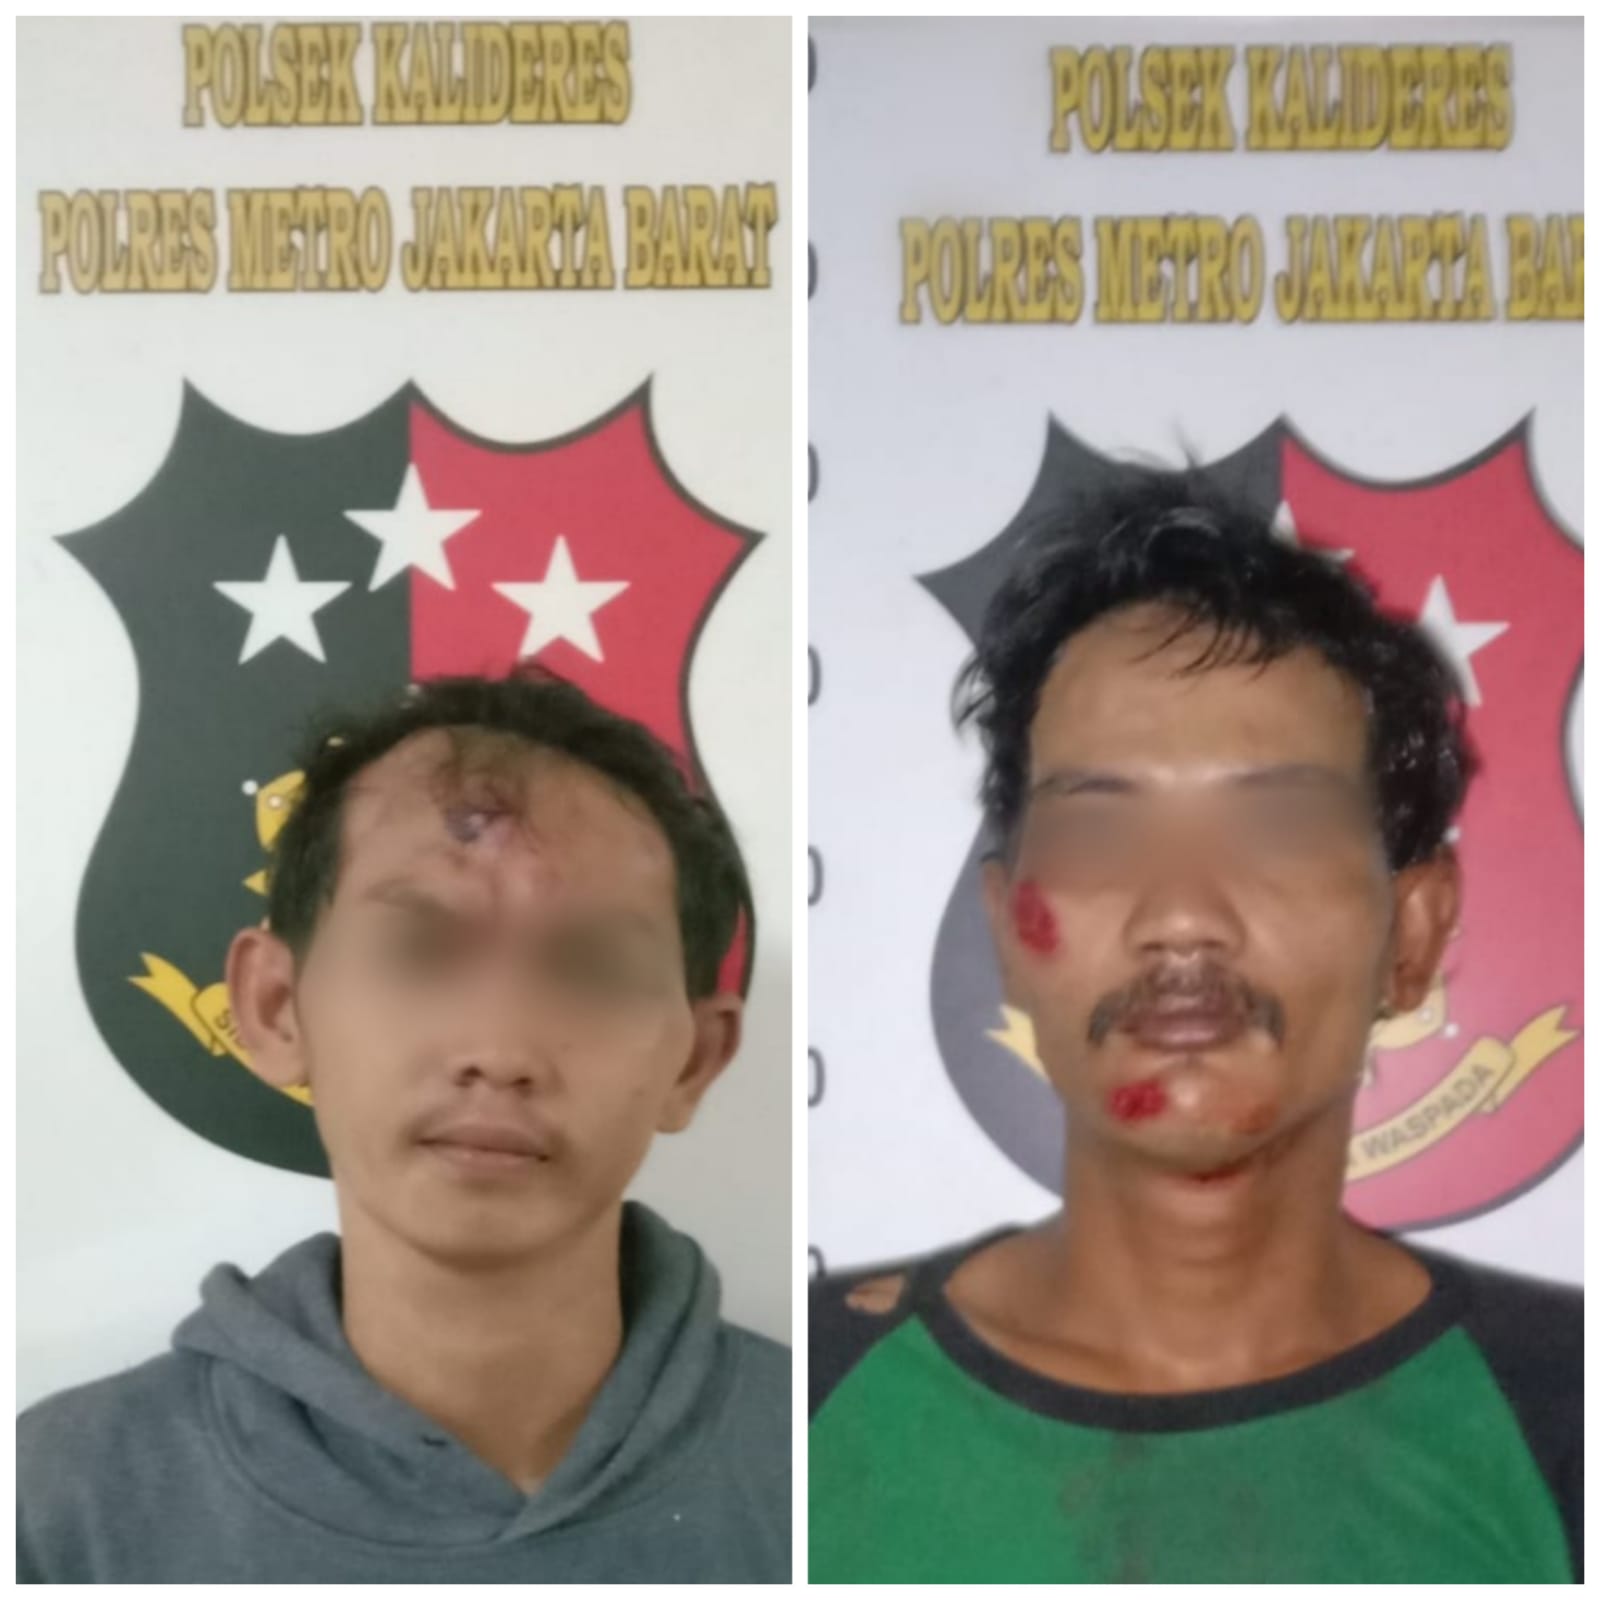 Polsek Kalideres Amankan 2 Orang Pelaku Jambret yang Tengah Beraksi di Jalan Kamal Raya